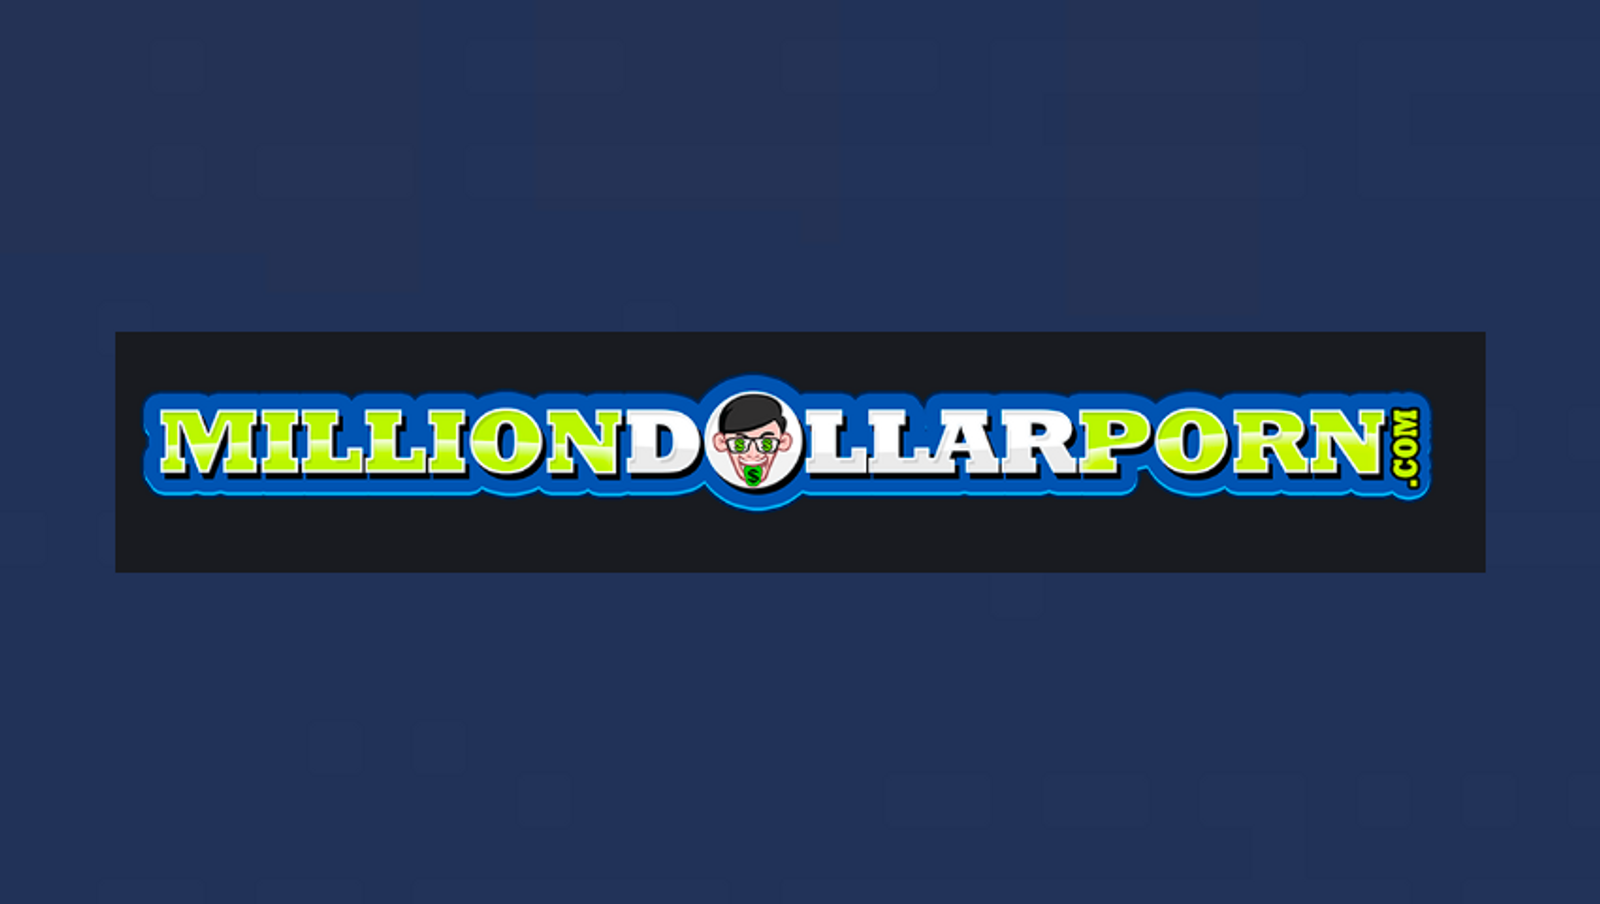 MillionDollarPorn.com Launches